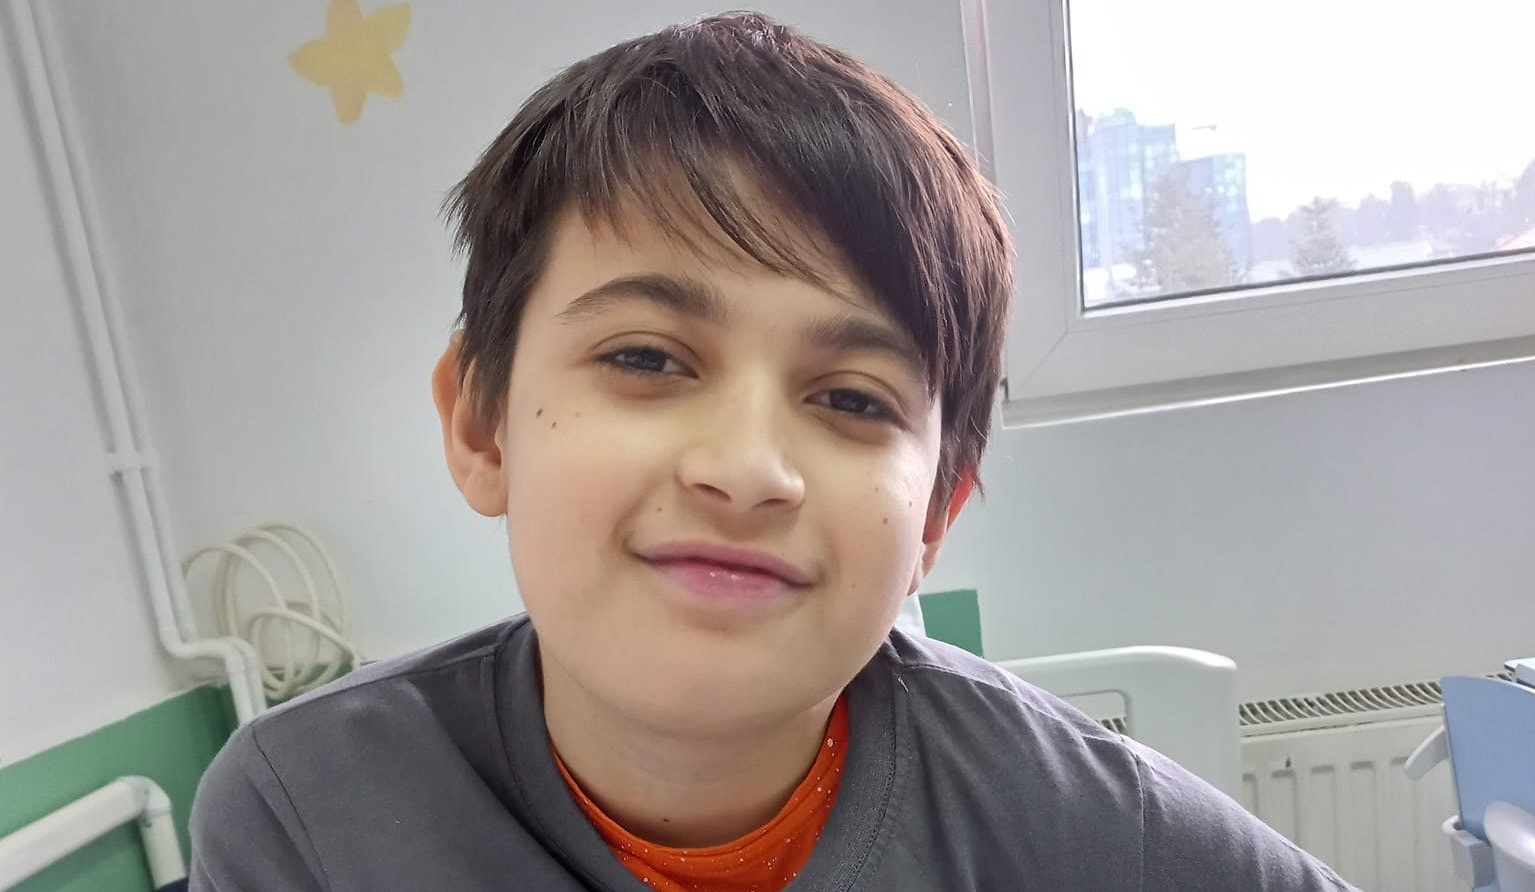 Strigăt de ajutor! Un copil de 12 ani din Cluj suferă de o tumoare care se reface indiferent de câte ori este operată